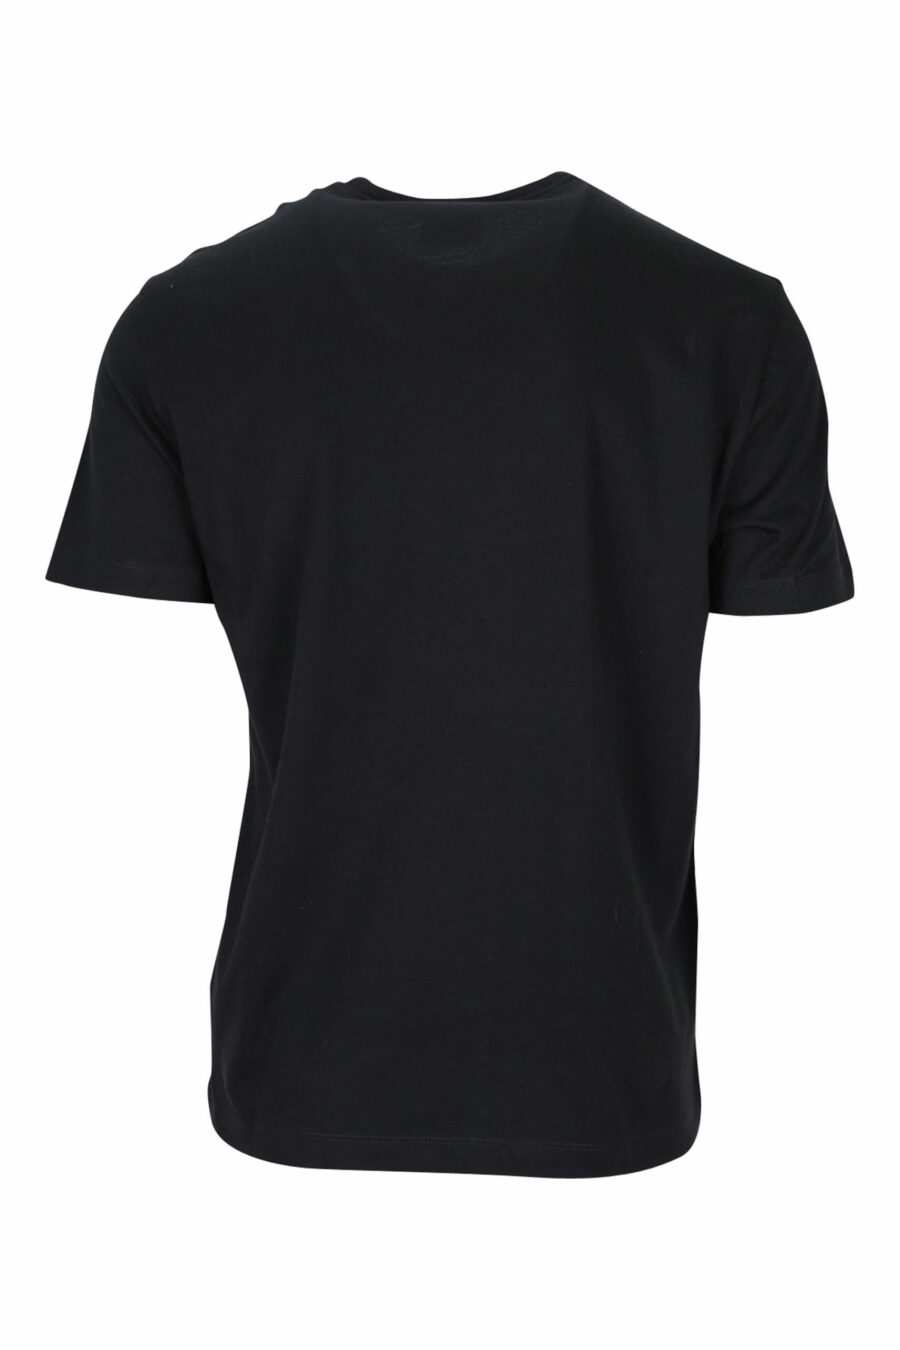 T-shirt schwarz mit weißem "lux identity" maxilogo - 8057767688400 1 skaliert